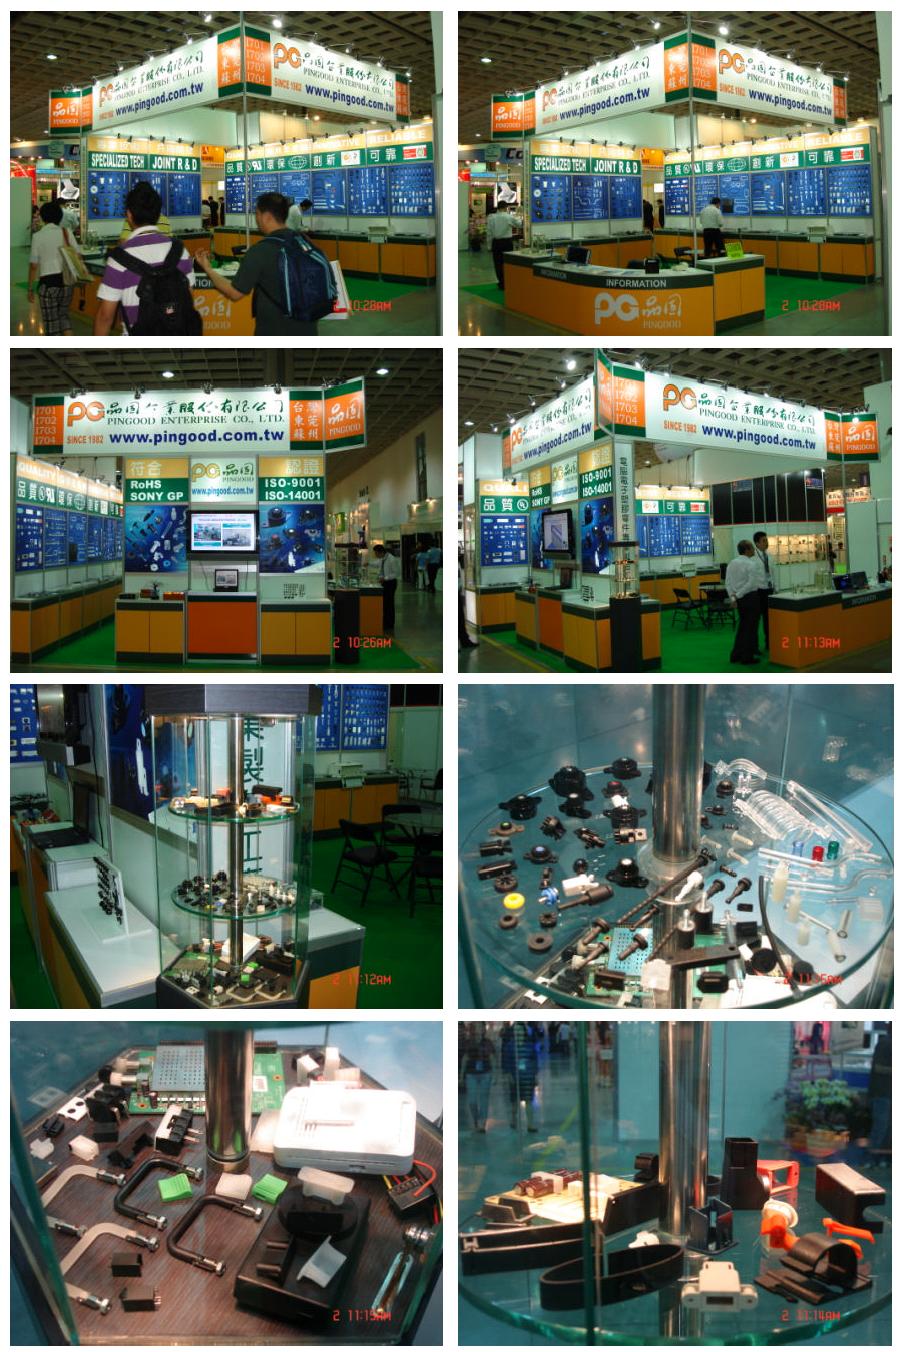 2009 Компьютерная выставка Компьютер Тайбэй